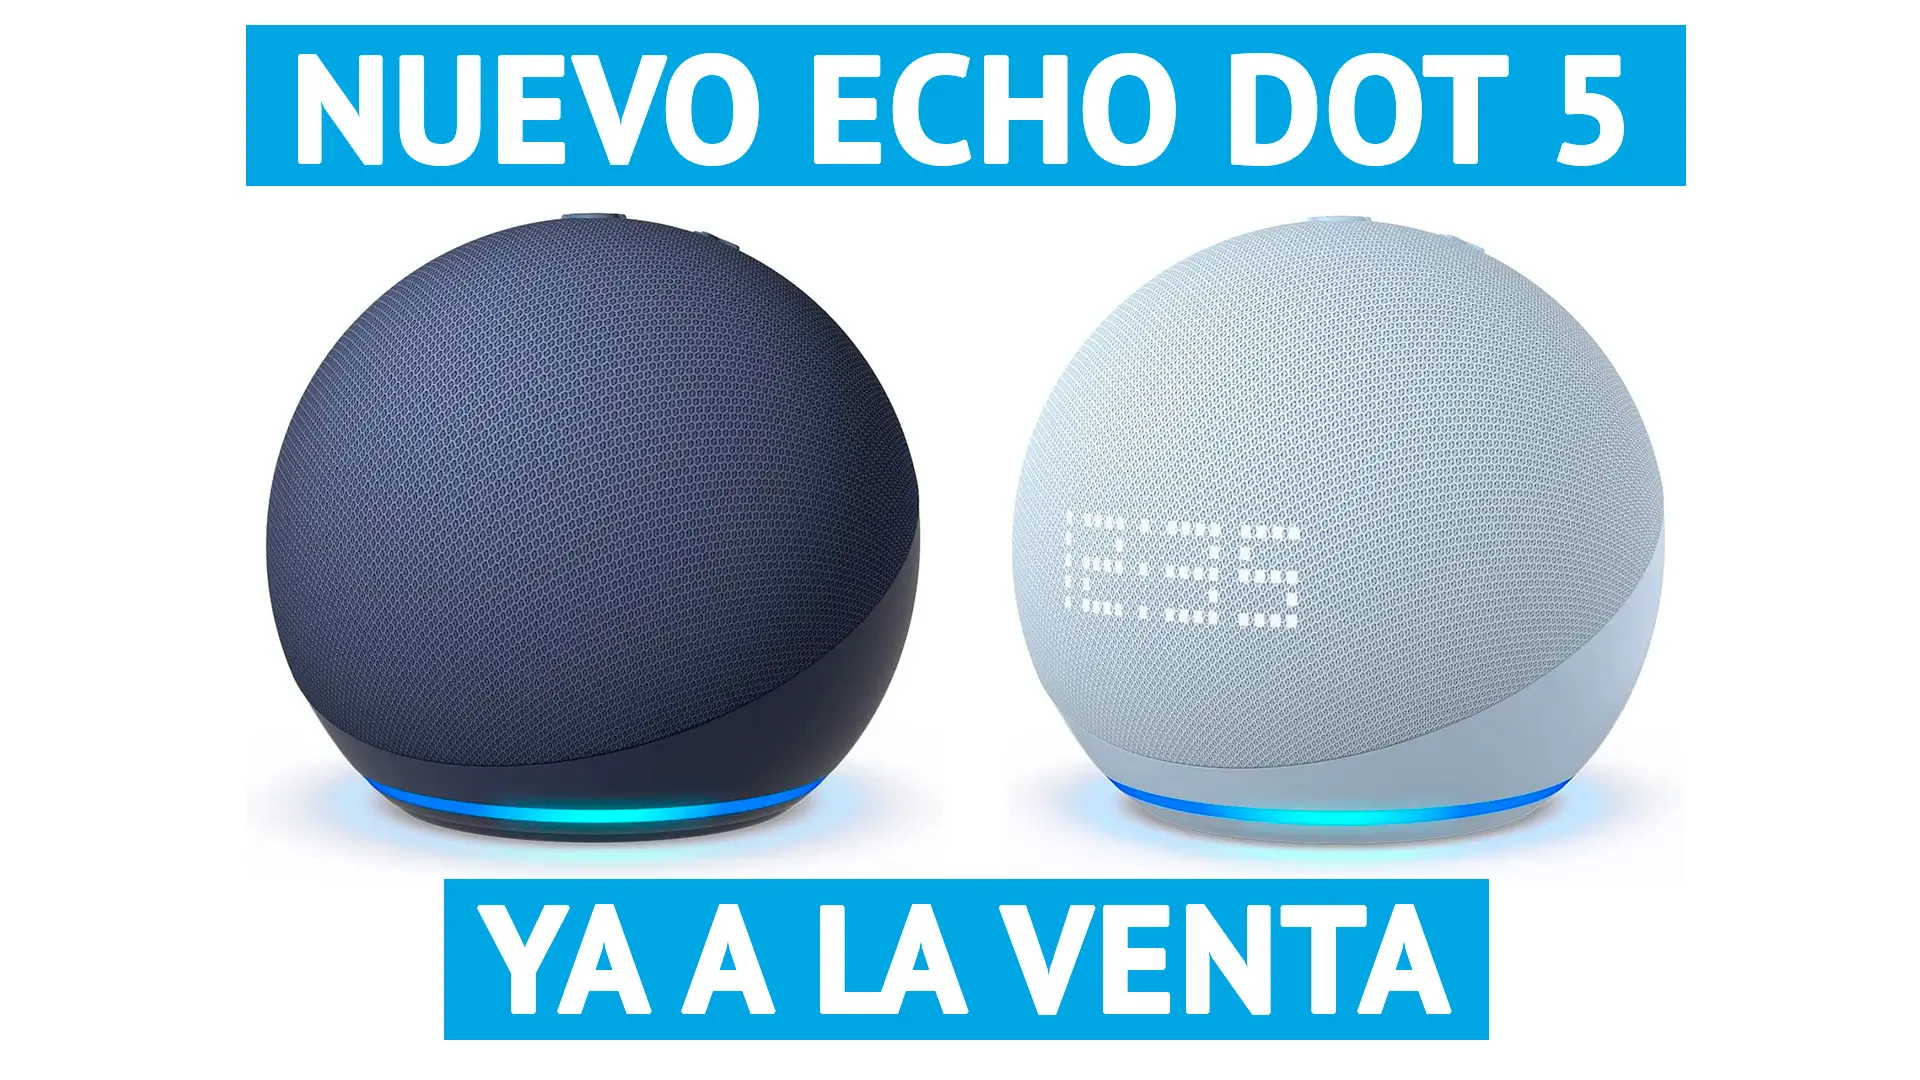 Nuevo Echo Dot 5 modelo de 2022 disponible para comprar